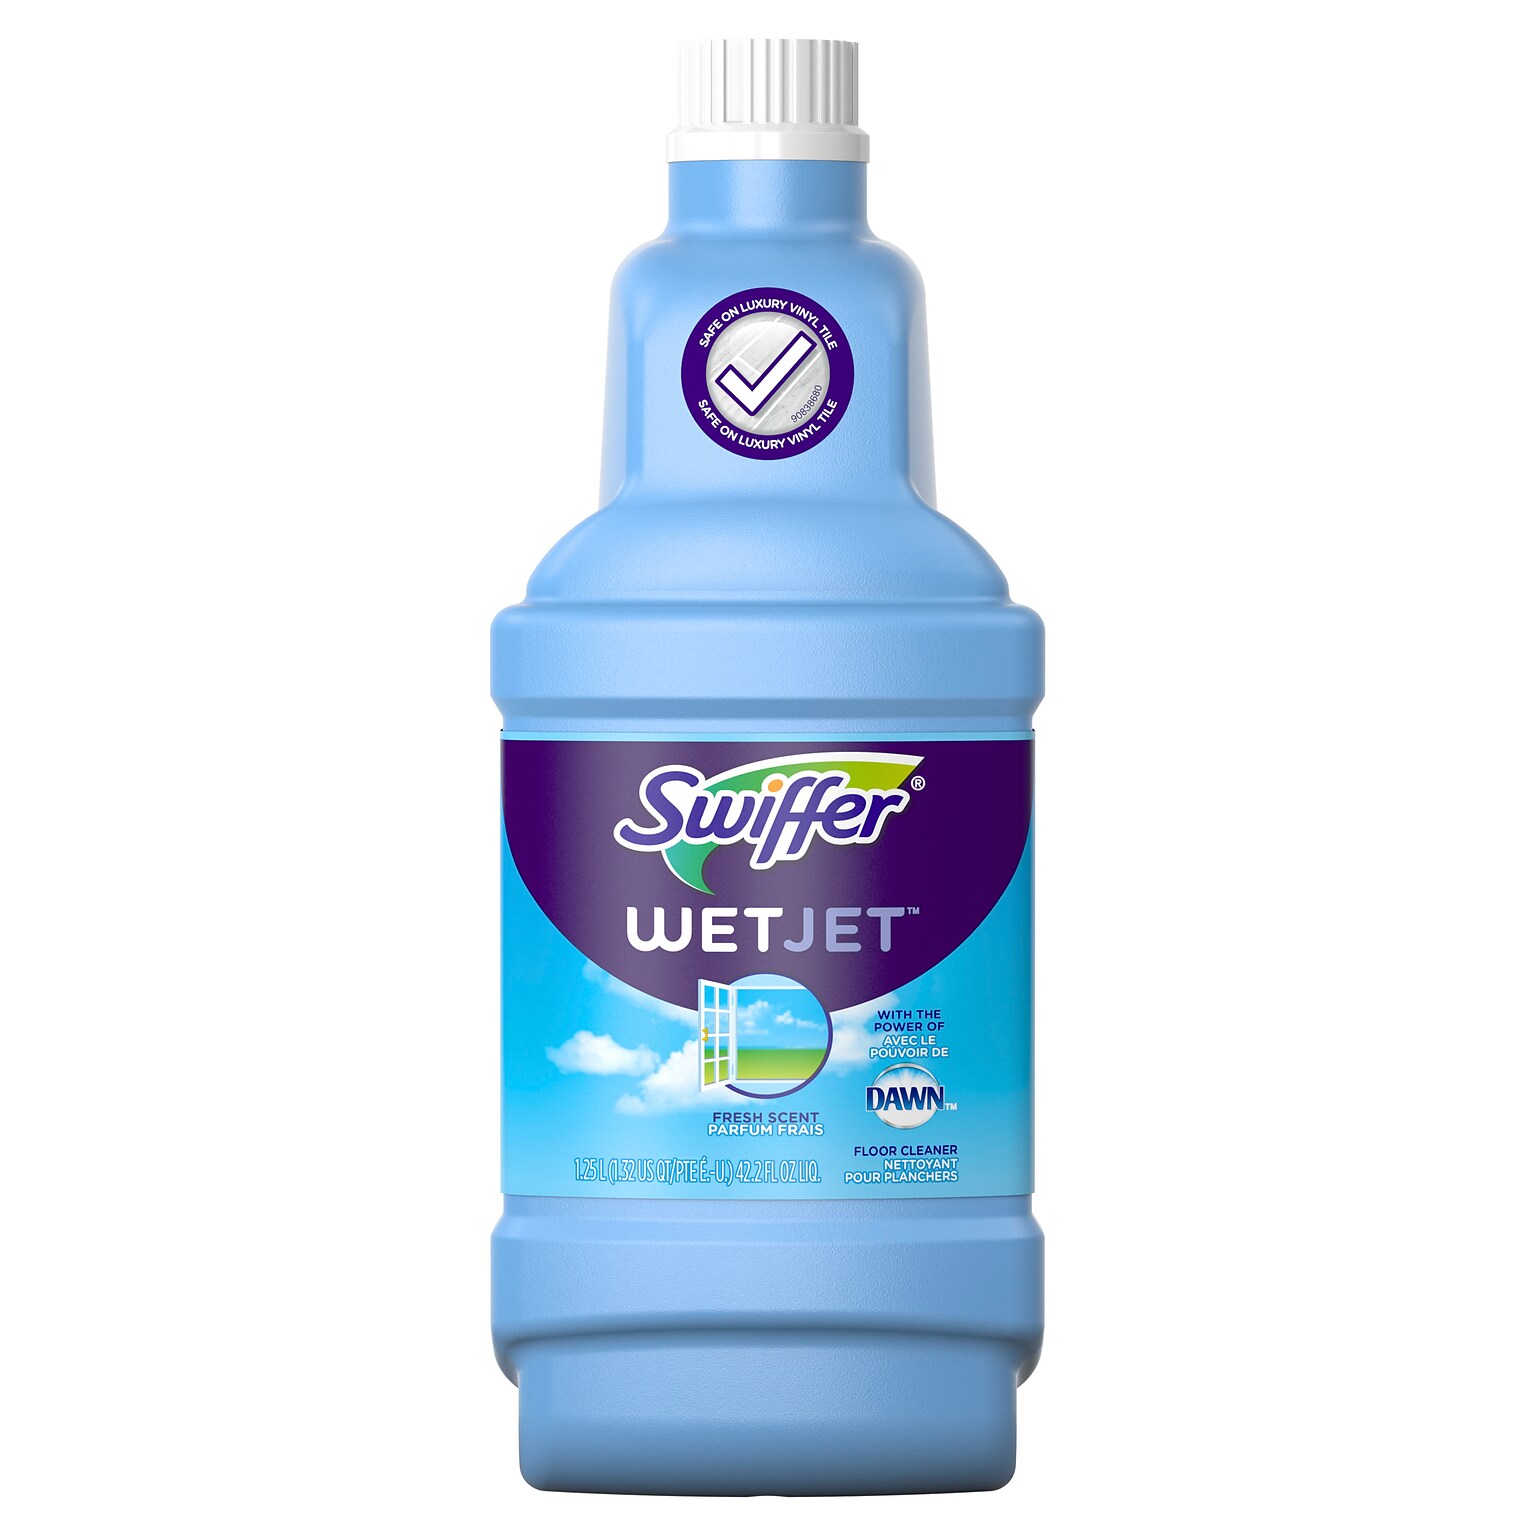 Swiffer WetJet Multi-Purpose Floor/Hardwood Liquid Cleaner Mop Solution Refill, Open Window Fresh Scent, 42.2 fl. oz. (23679)